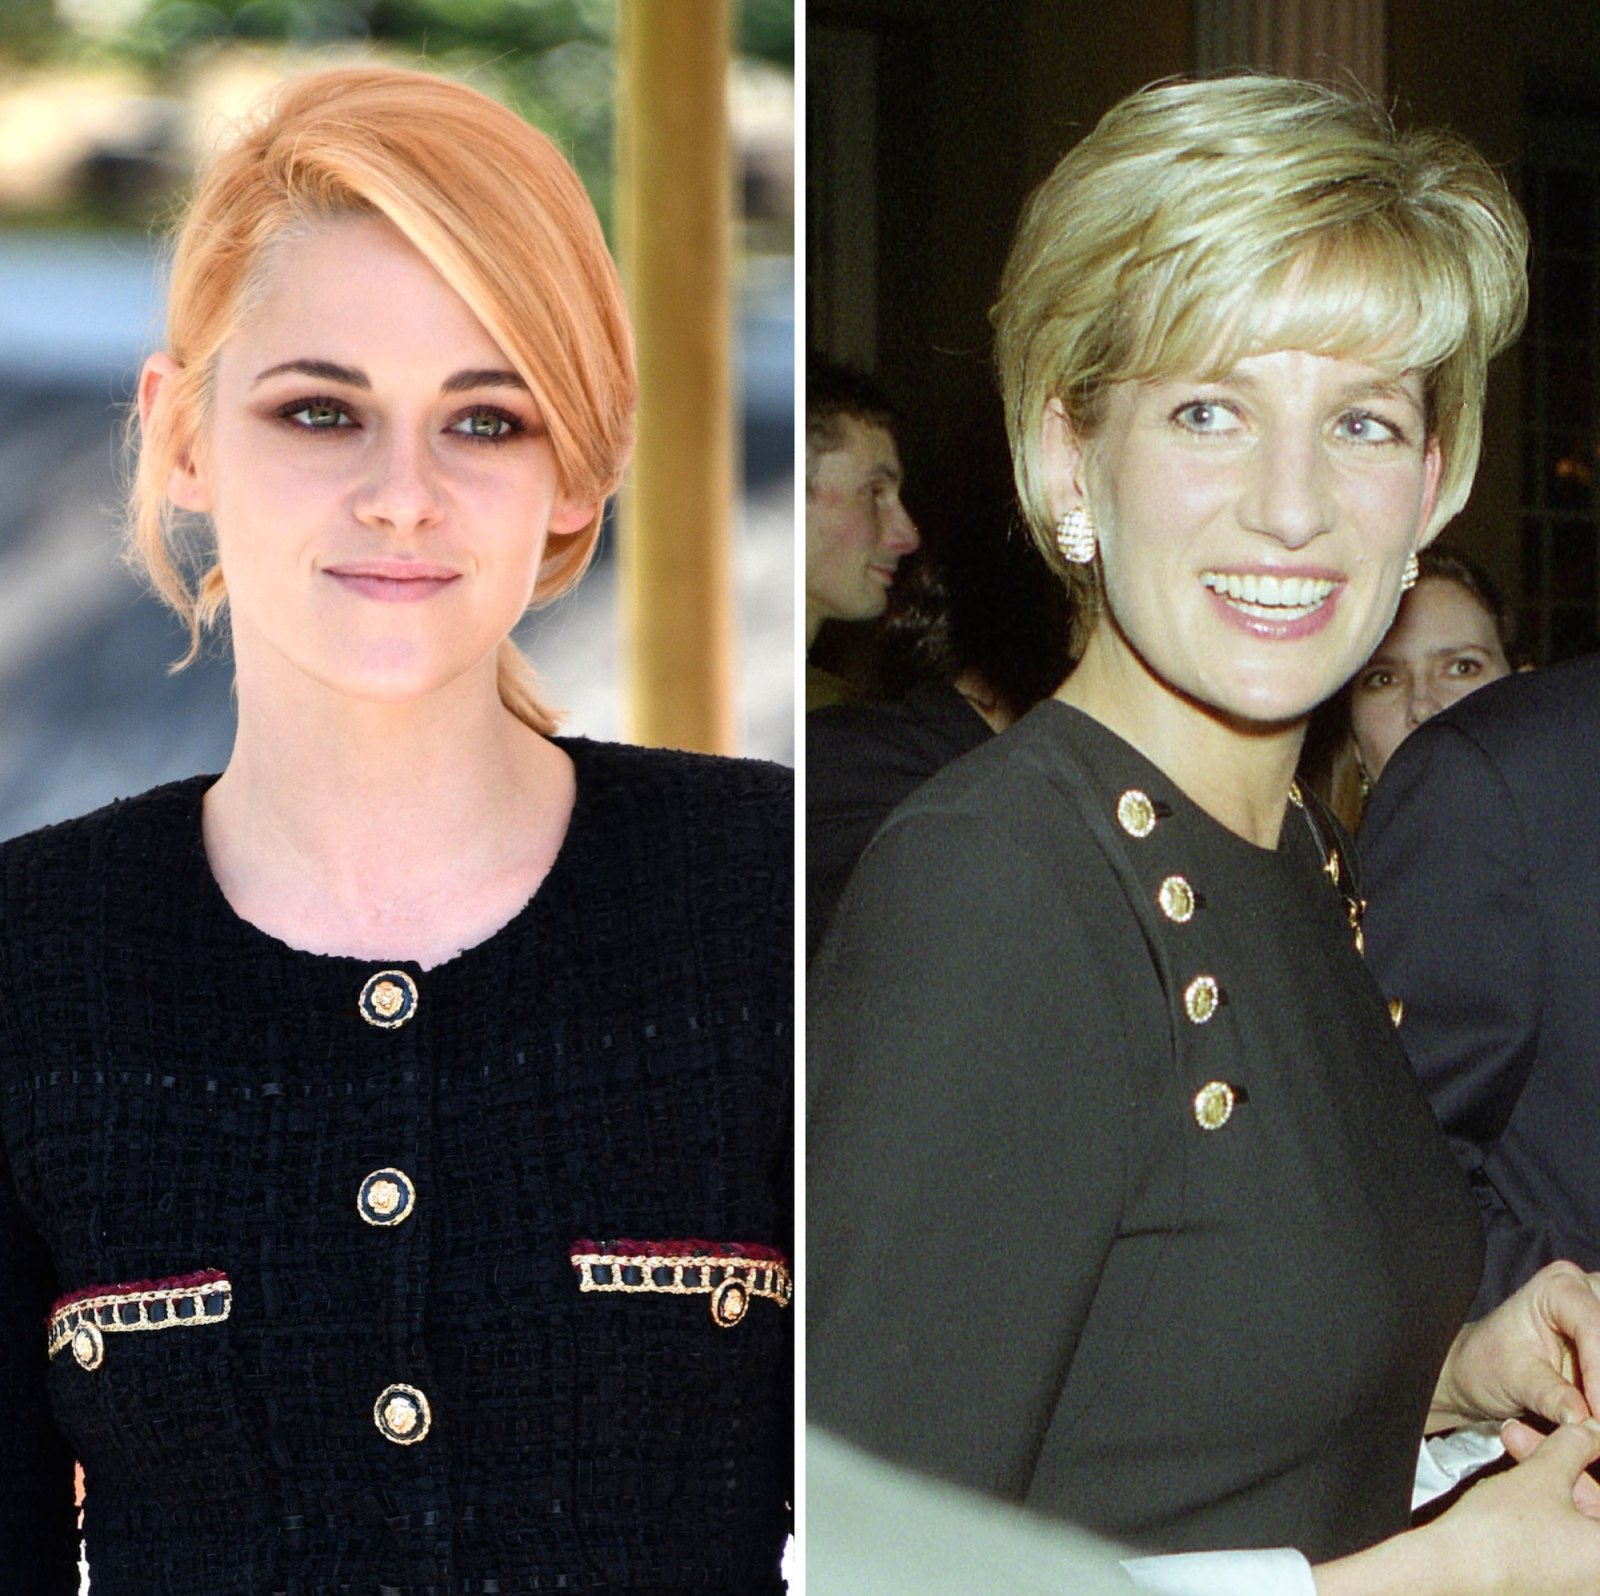 Kristen Stewart Felt Sign Off From Princess Diana